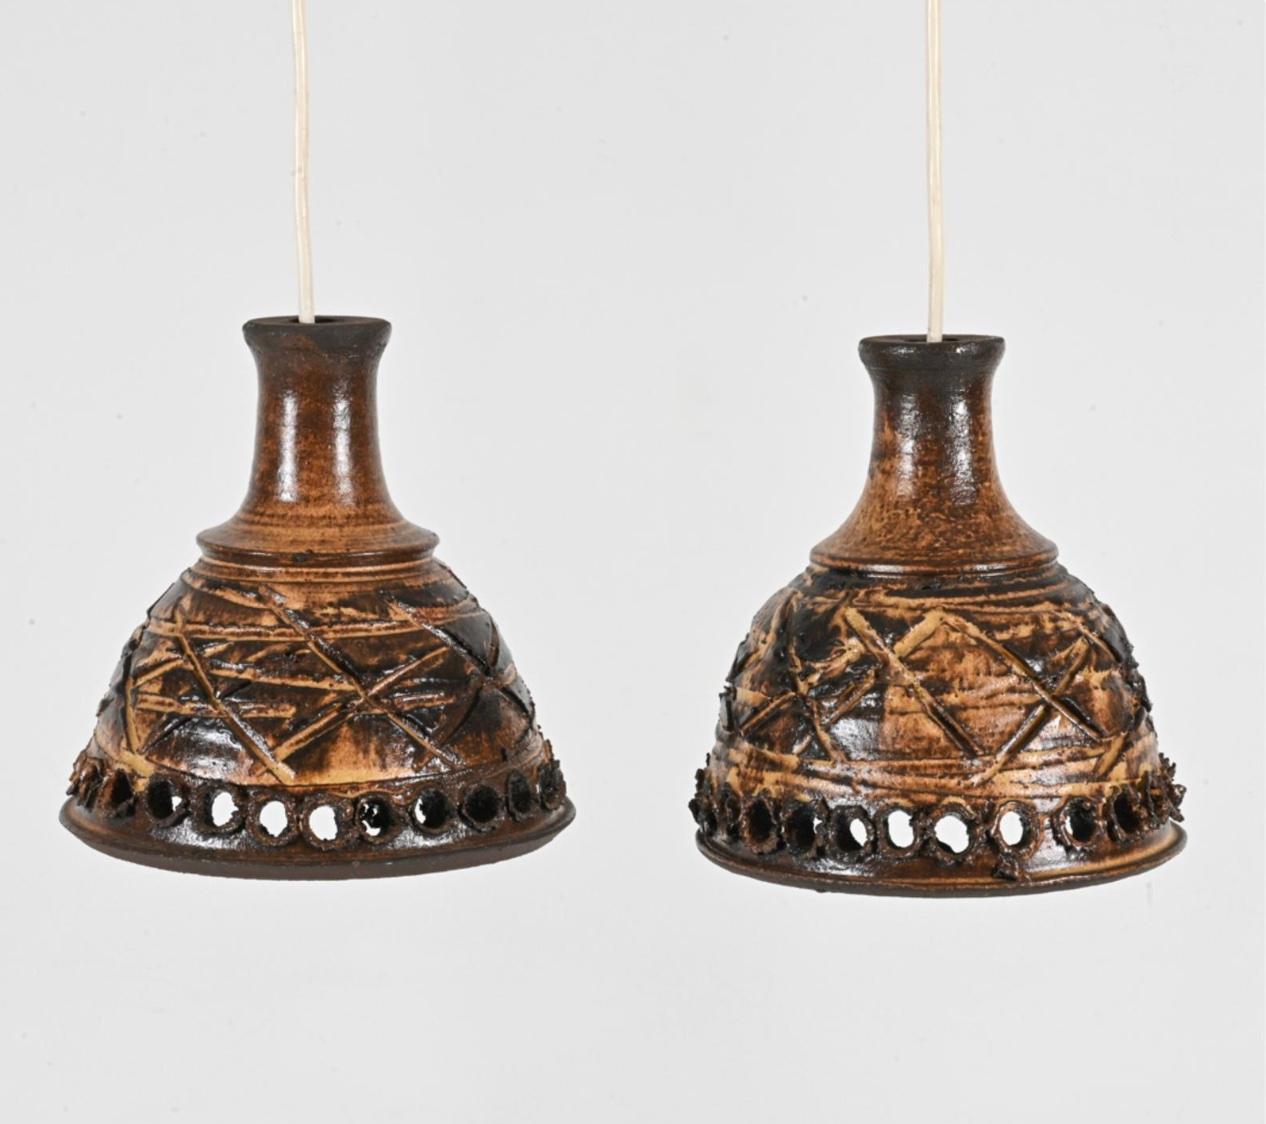 Paire de lampes suspendues scandinaves modernes en céramique émaillée faites à la main, danoises, vers 1960. La glaçure brune à trous comporte une douille d'ampoule et un fil électrique suspendu. Nécessité d'un câblage. 

Dimensions : H 8.25